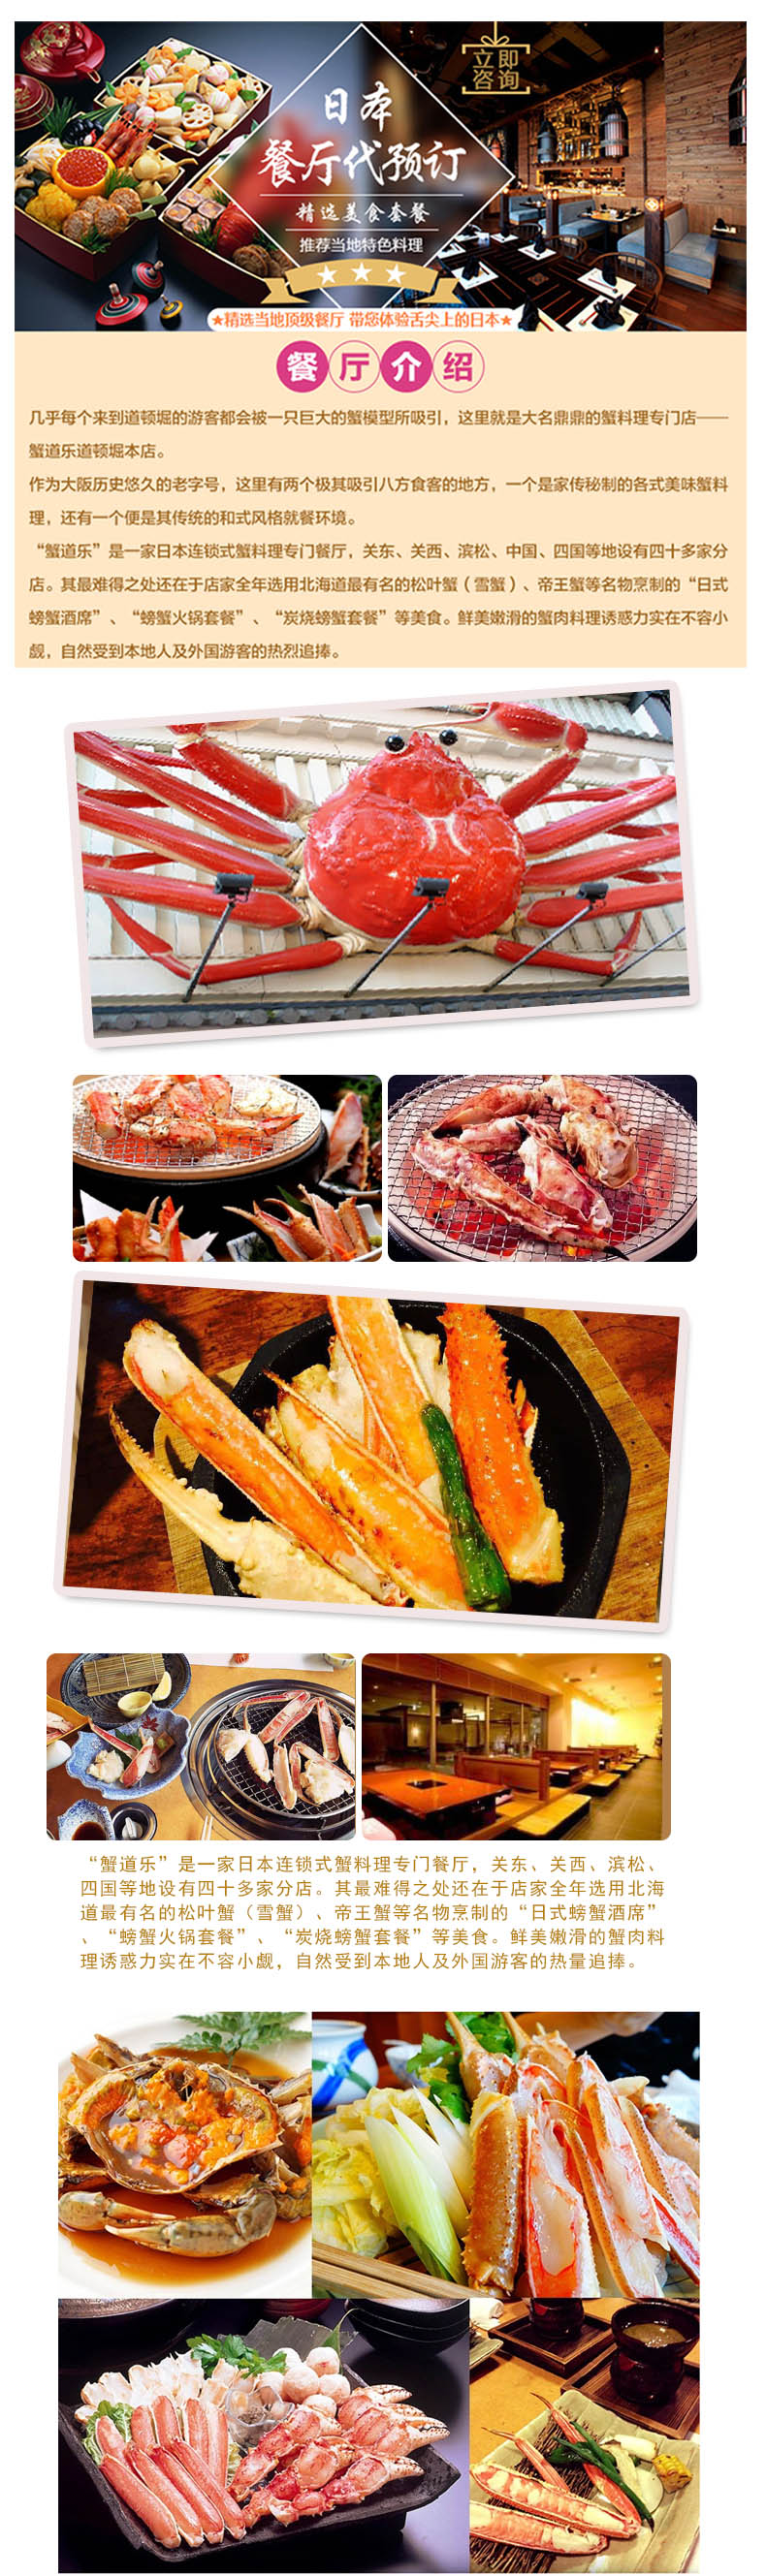 日本螃蟹料理蟹道乐蟹宴料理餐厅订座预约 付款后需二次确认 马蜂窝自由行 马蜂窝自由行